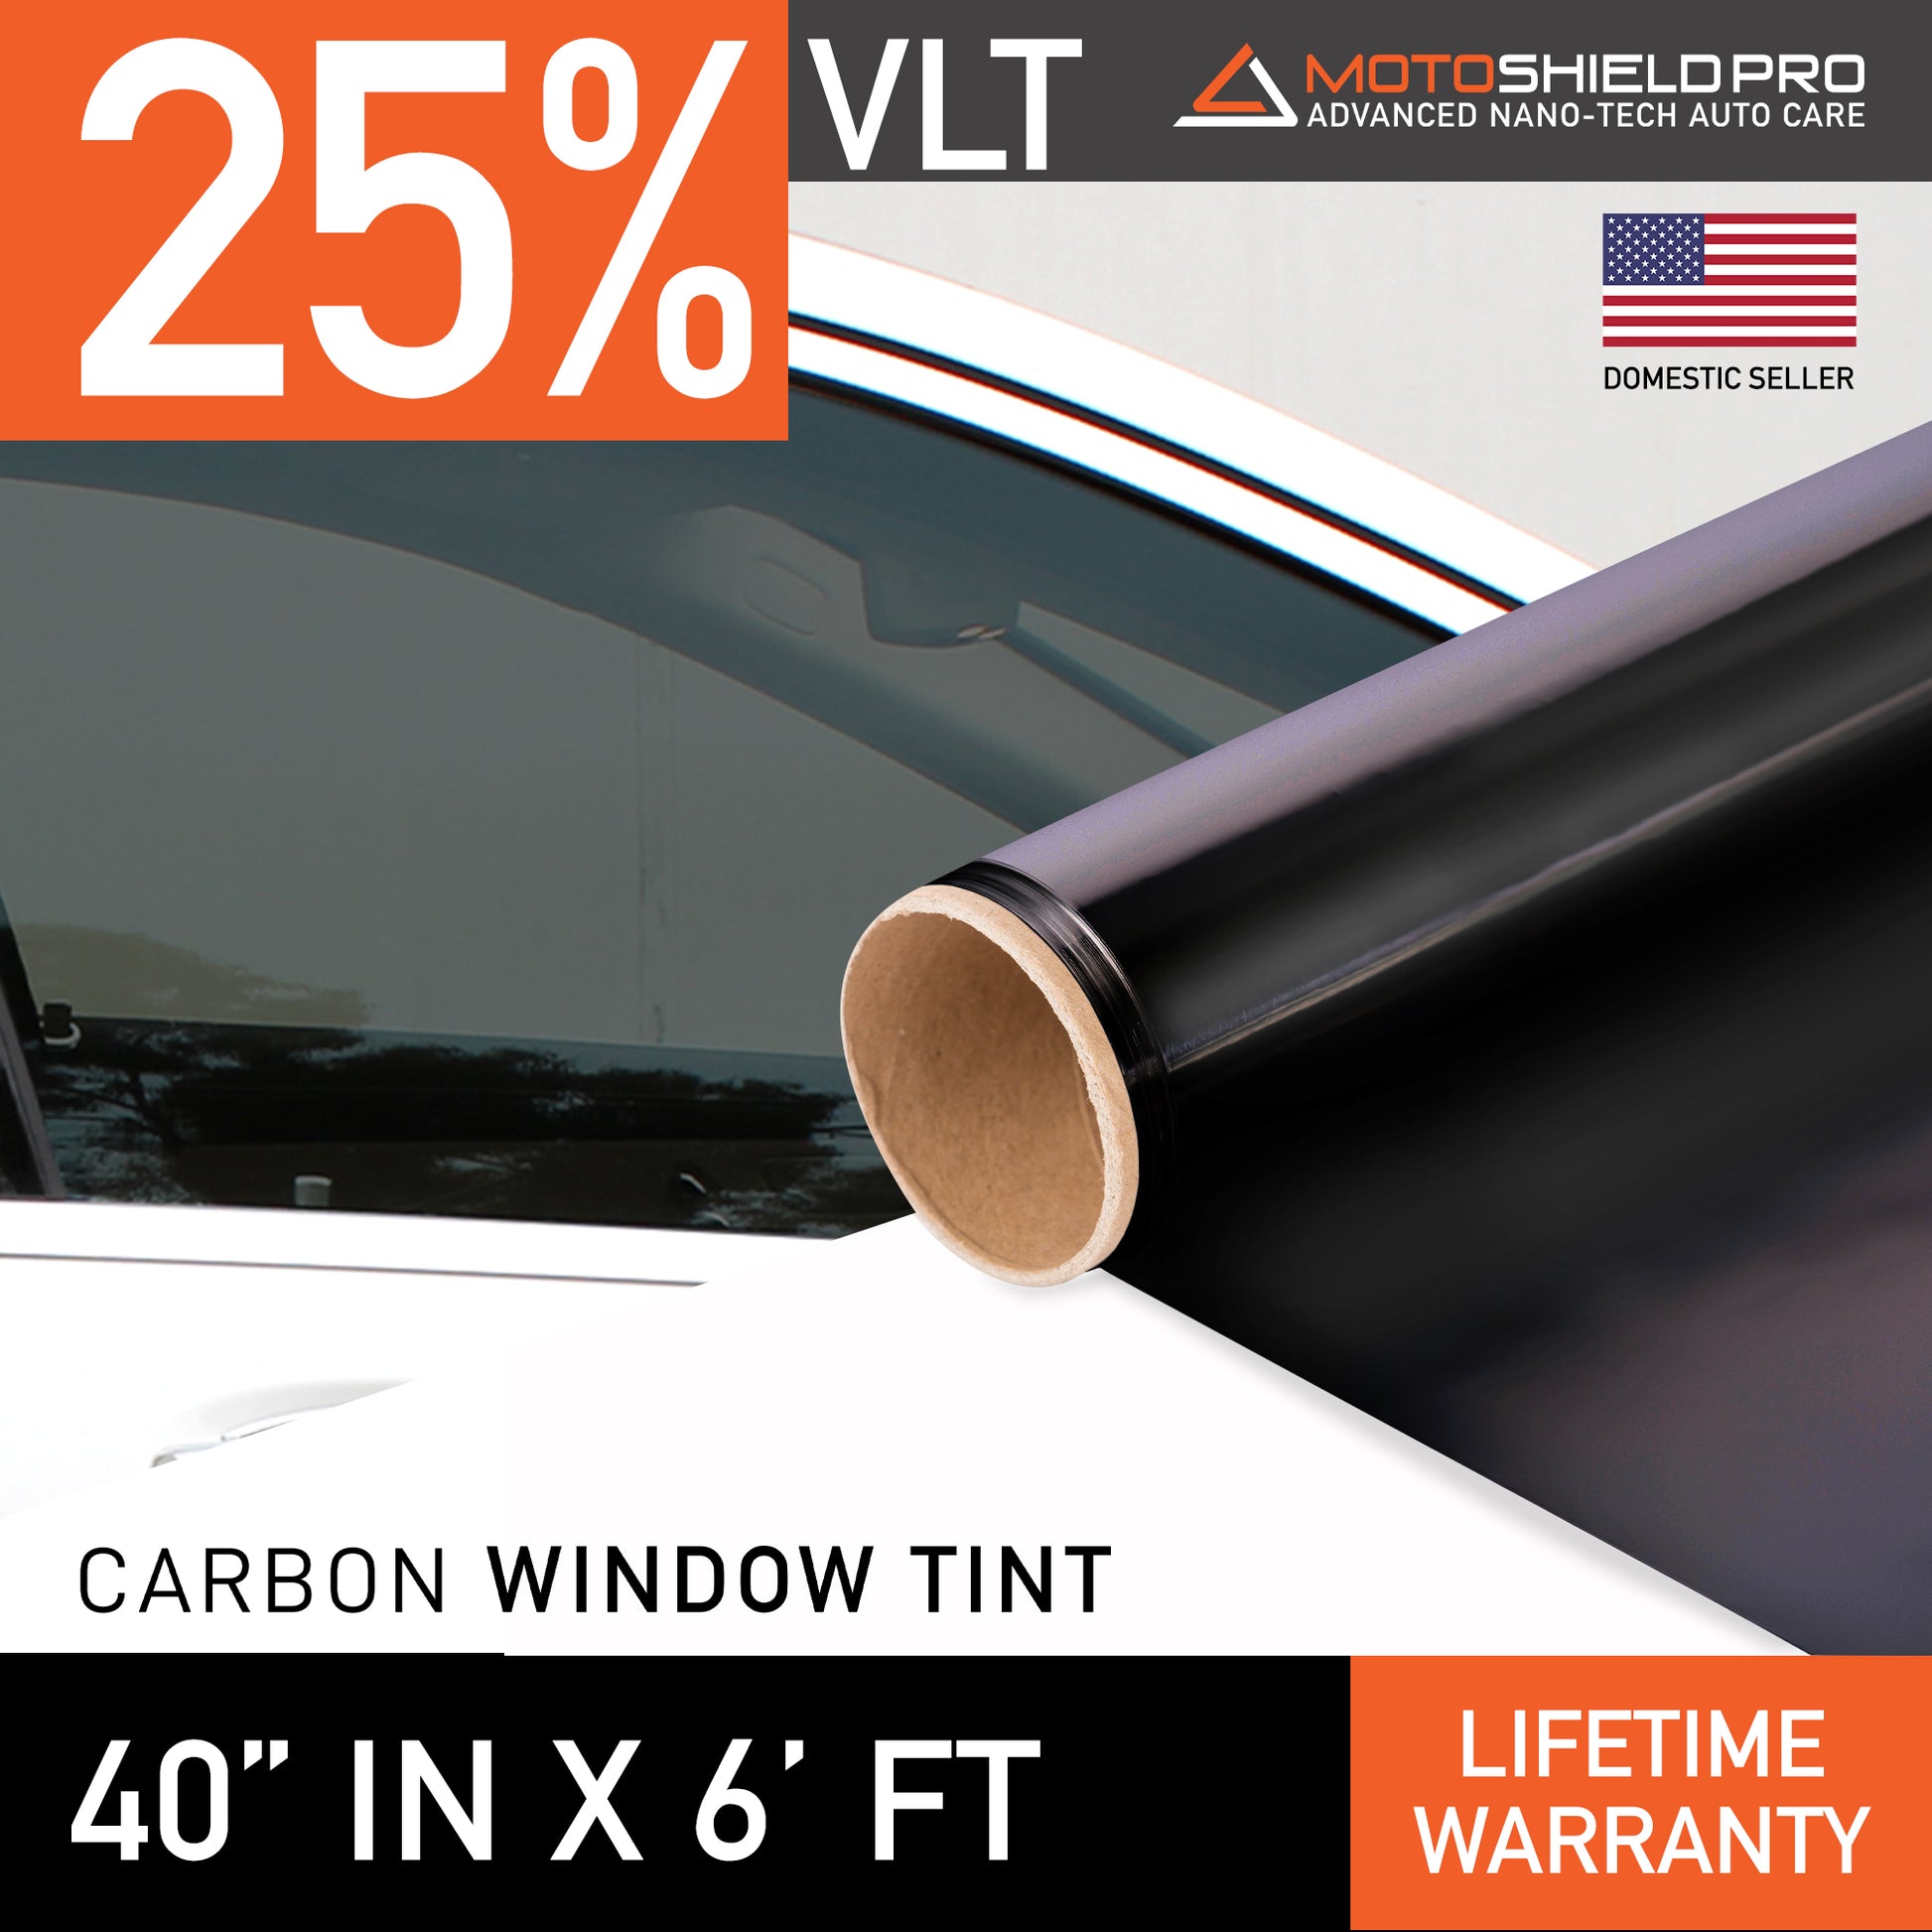 MotoShield Pro Carbon Window Tint - 40" in x 6' ft Roll + Lifetime Warranty